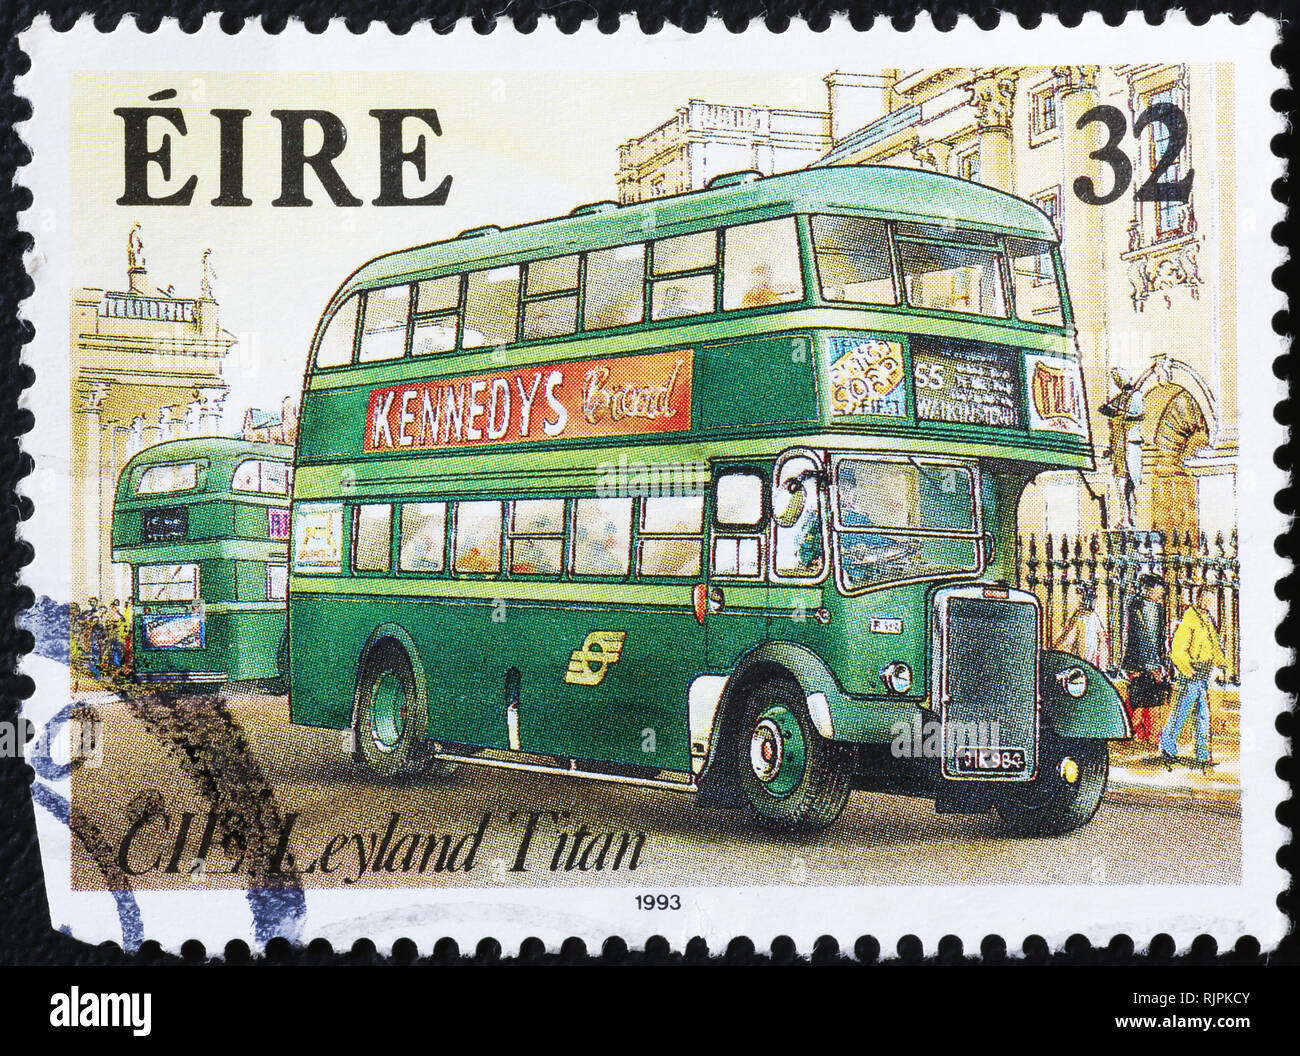 Irische Doppeldeckerbus auf Briefmarke Stockfoto